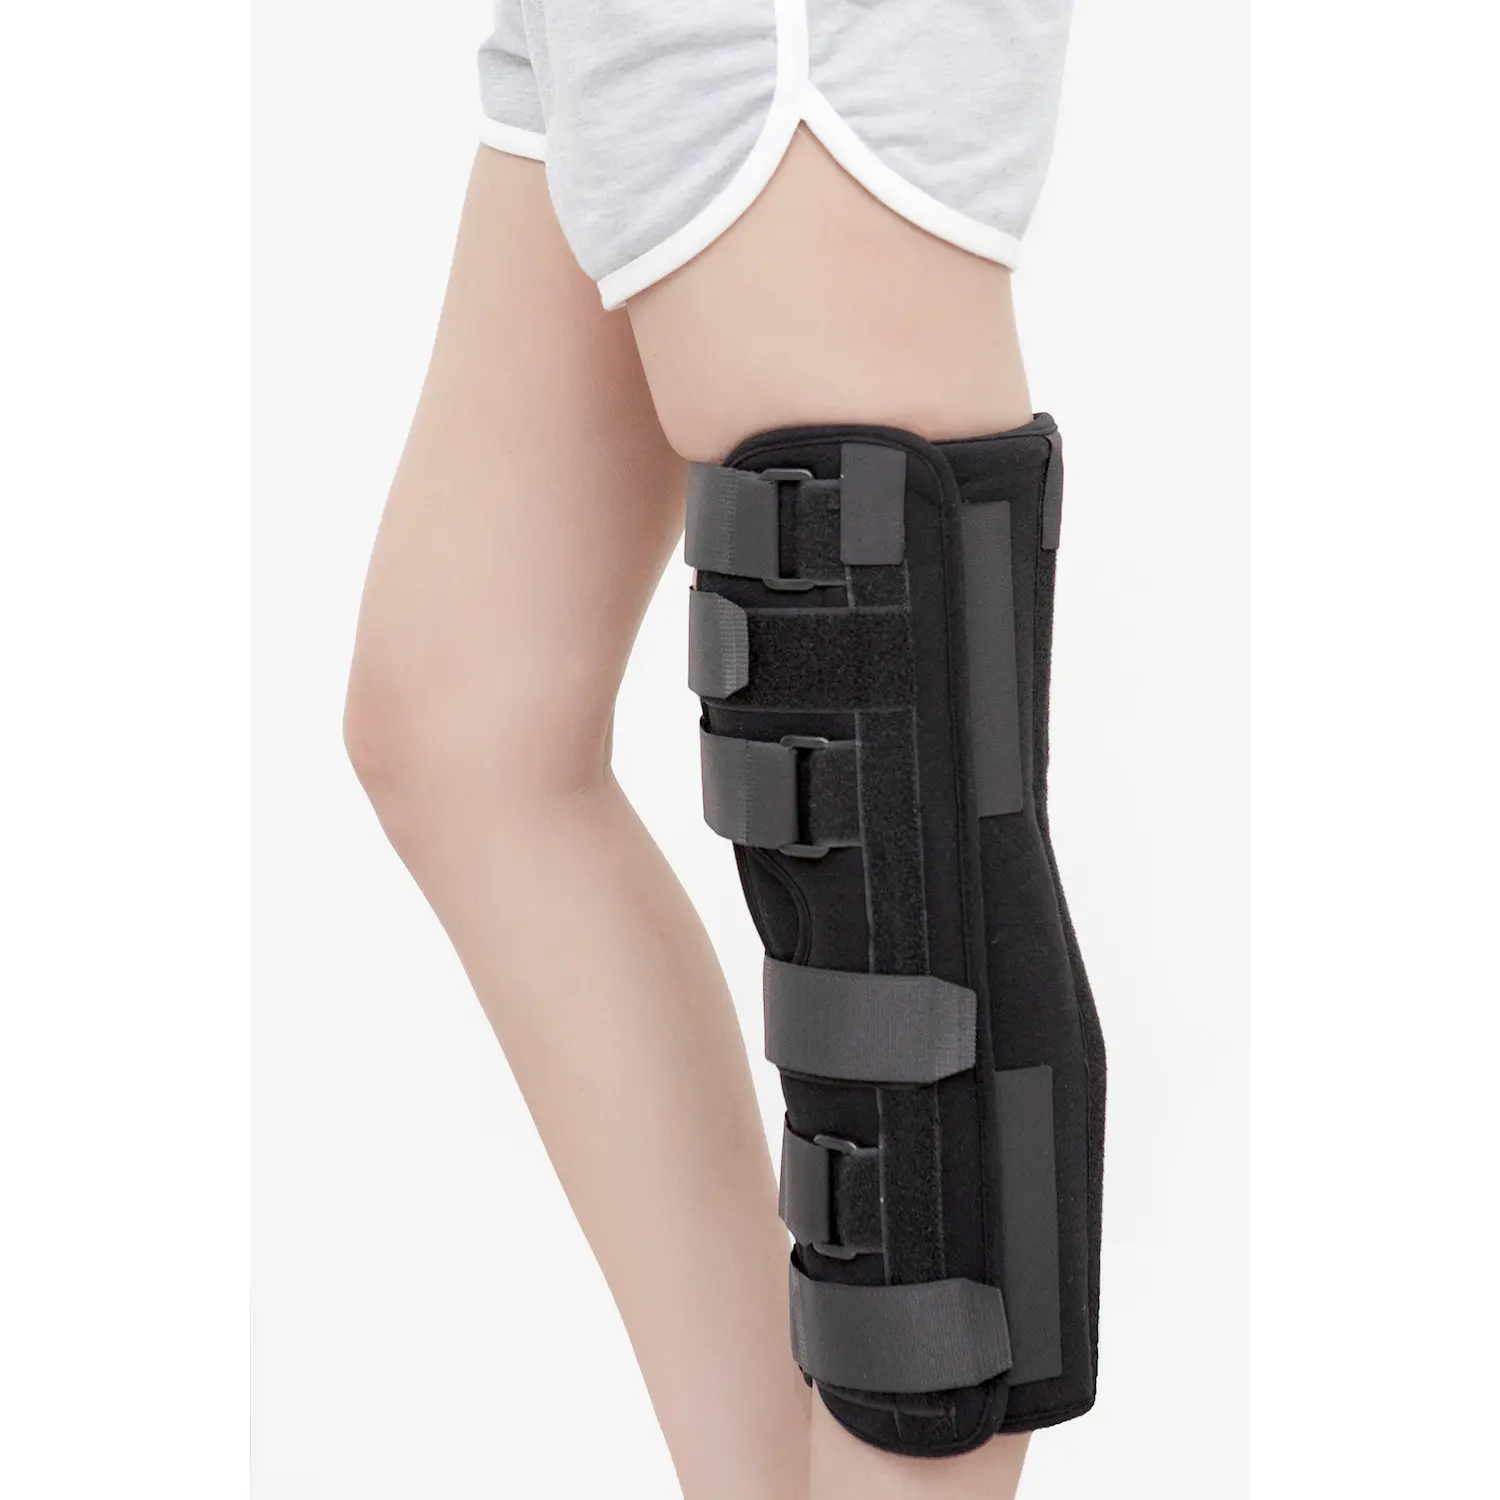 Tri-imobilizador de joelho de painel, cinta de joelho seguro e estabilizador para recuperação, frascos de joelho, instabilidade, acl, mcl, menisco